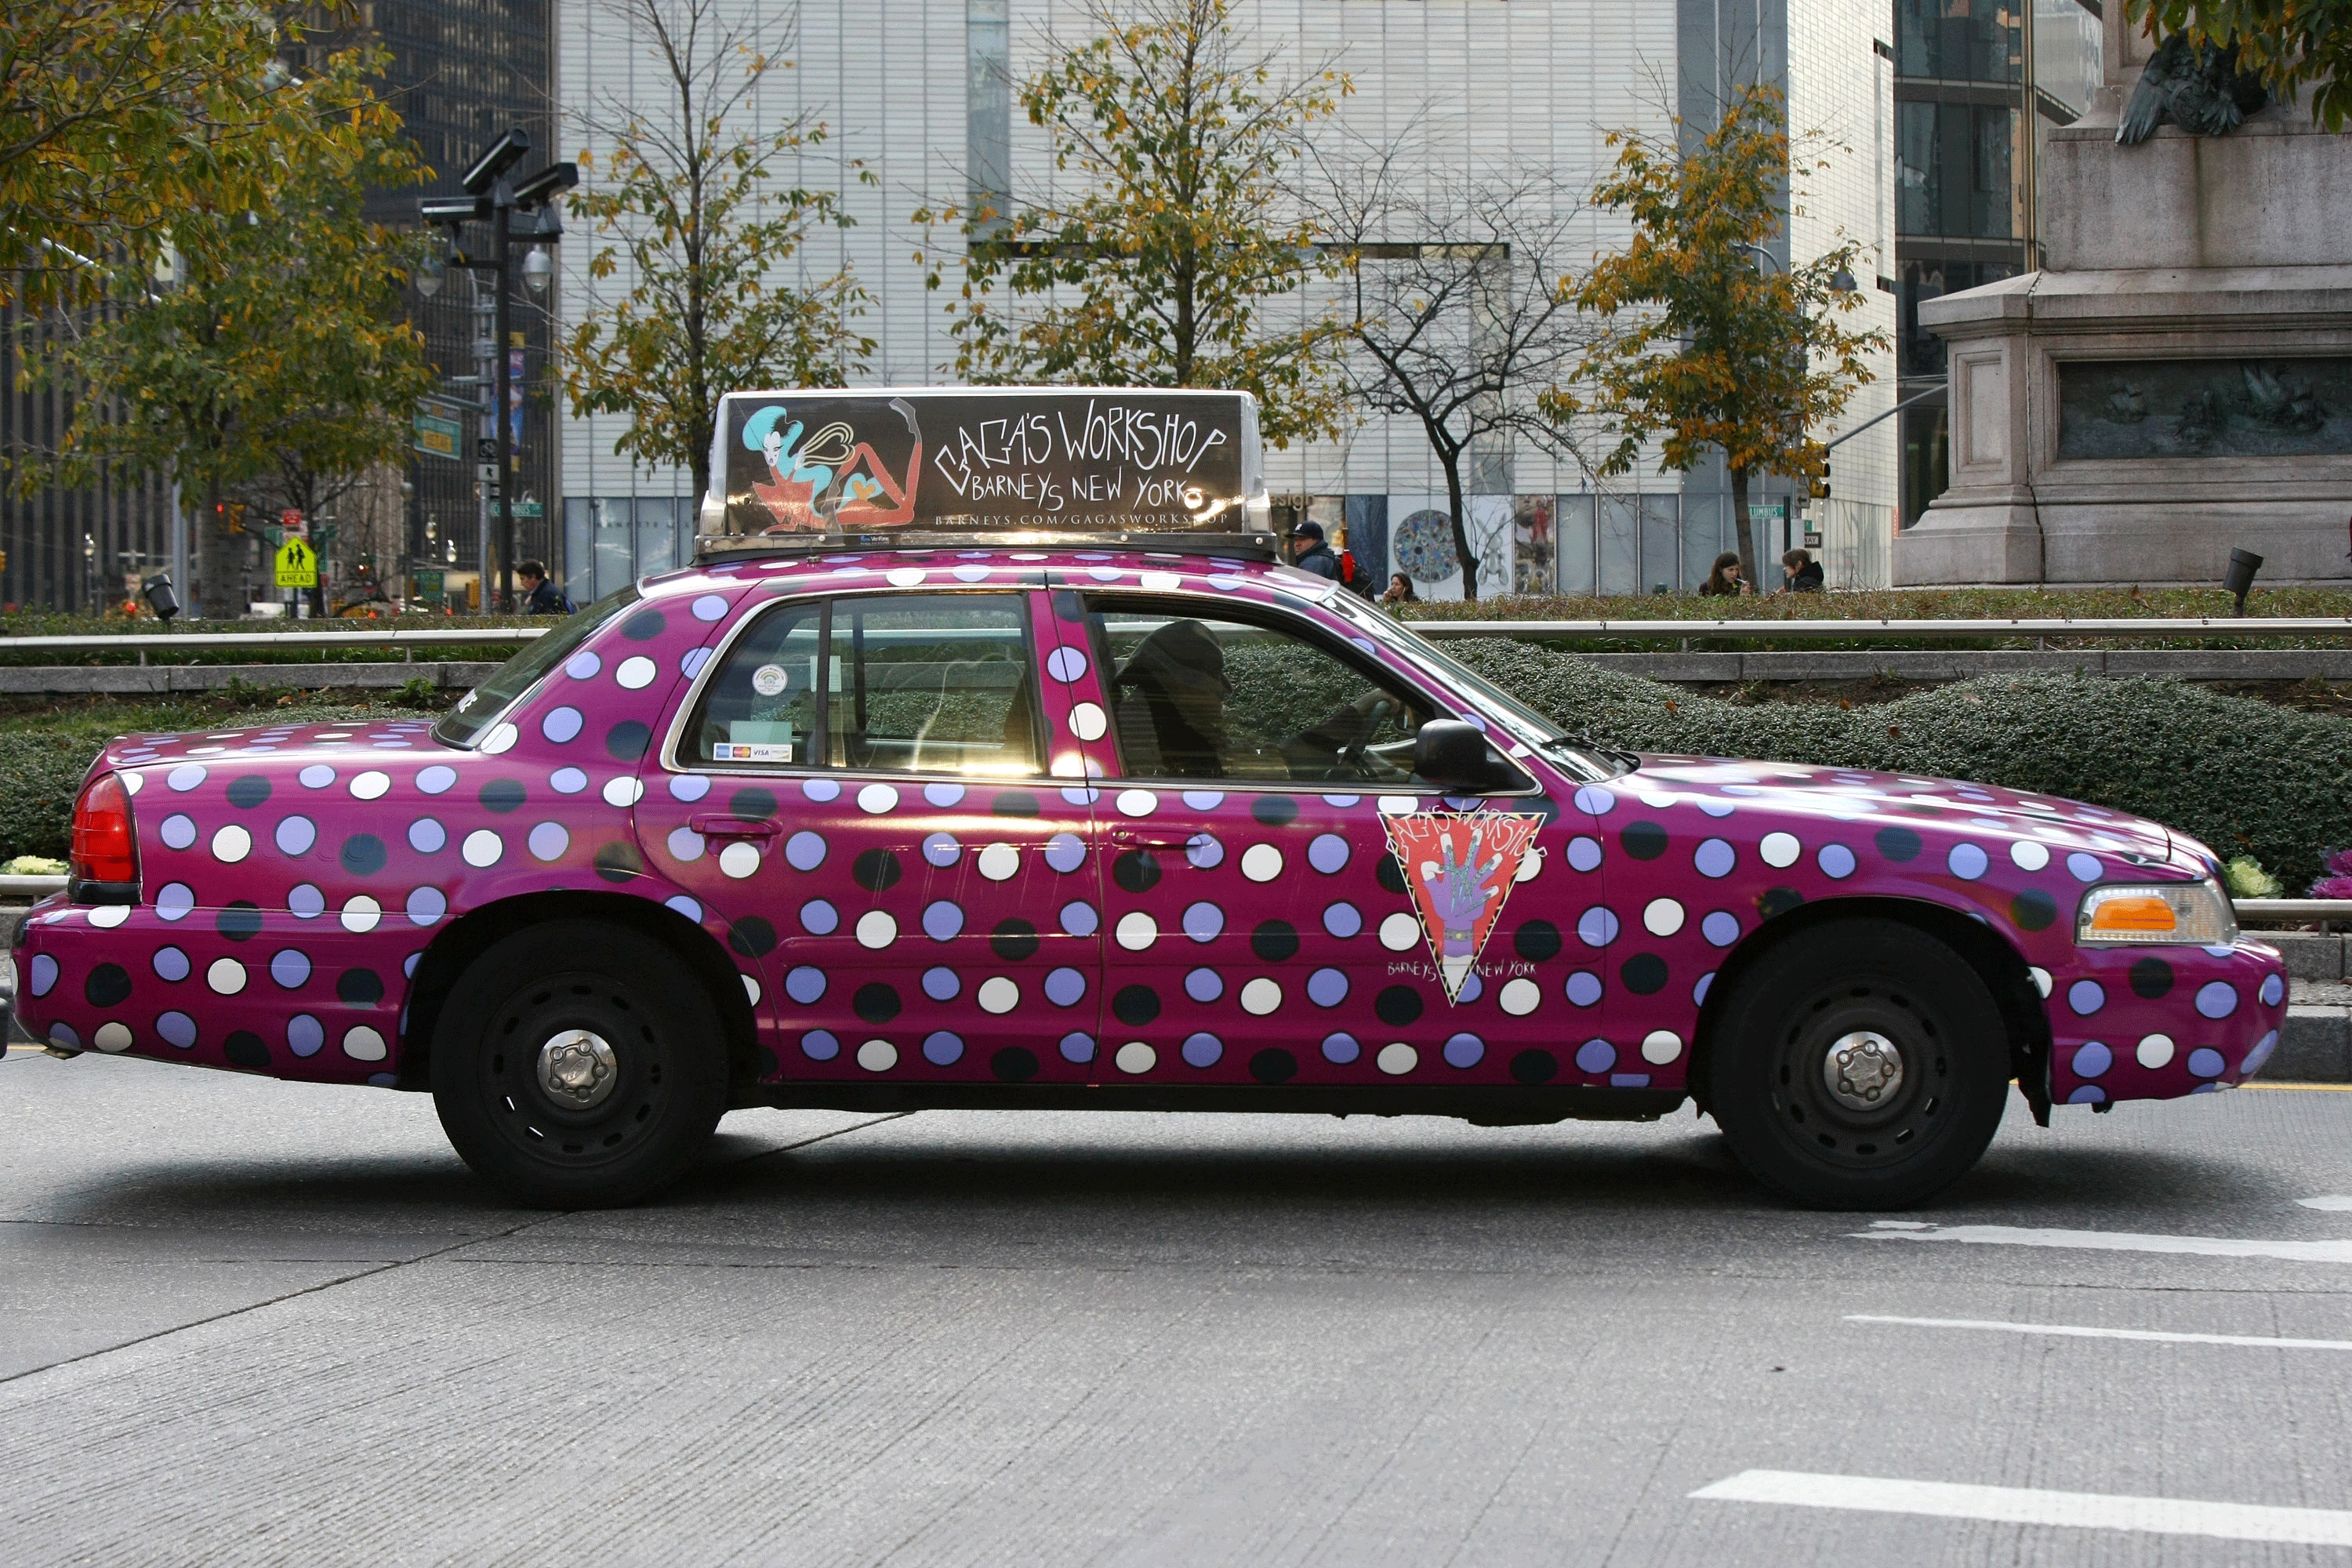 003-polka-dot-cab.gif 